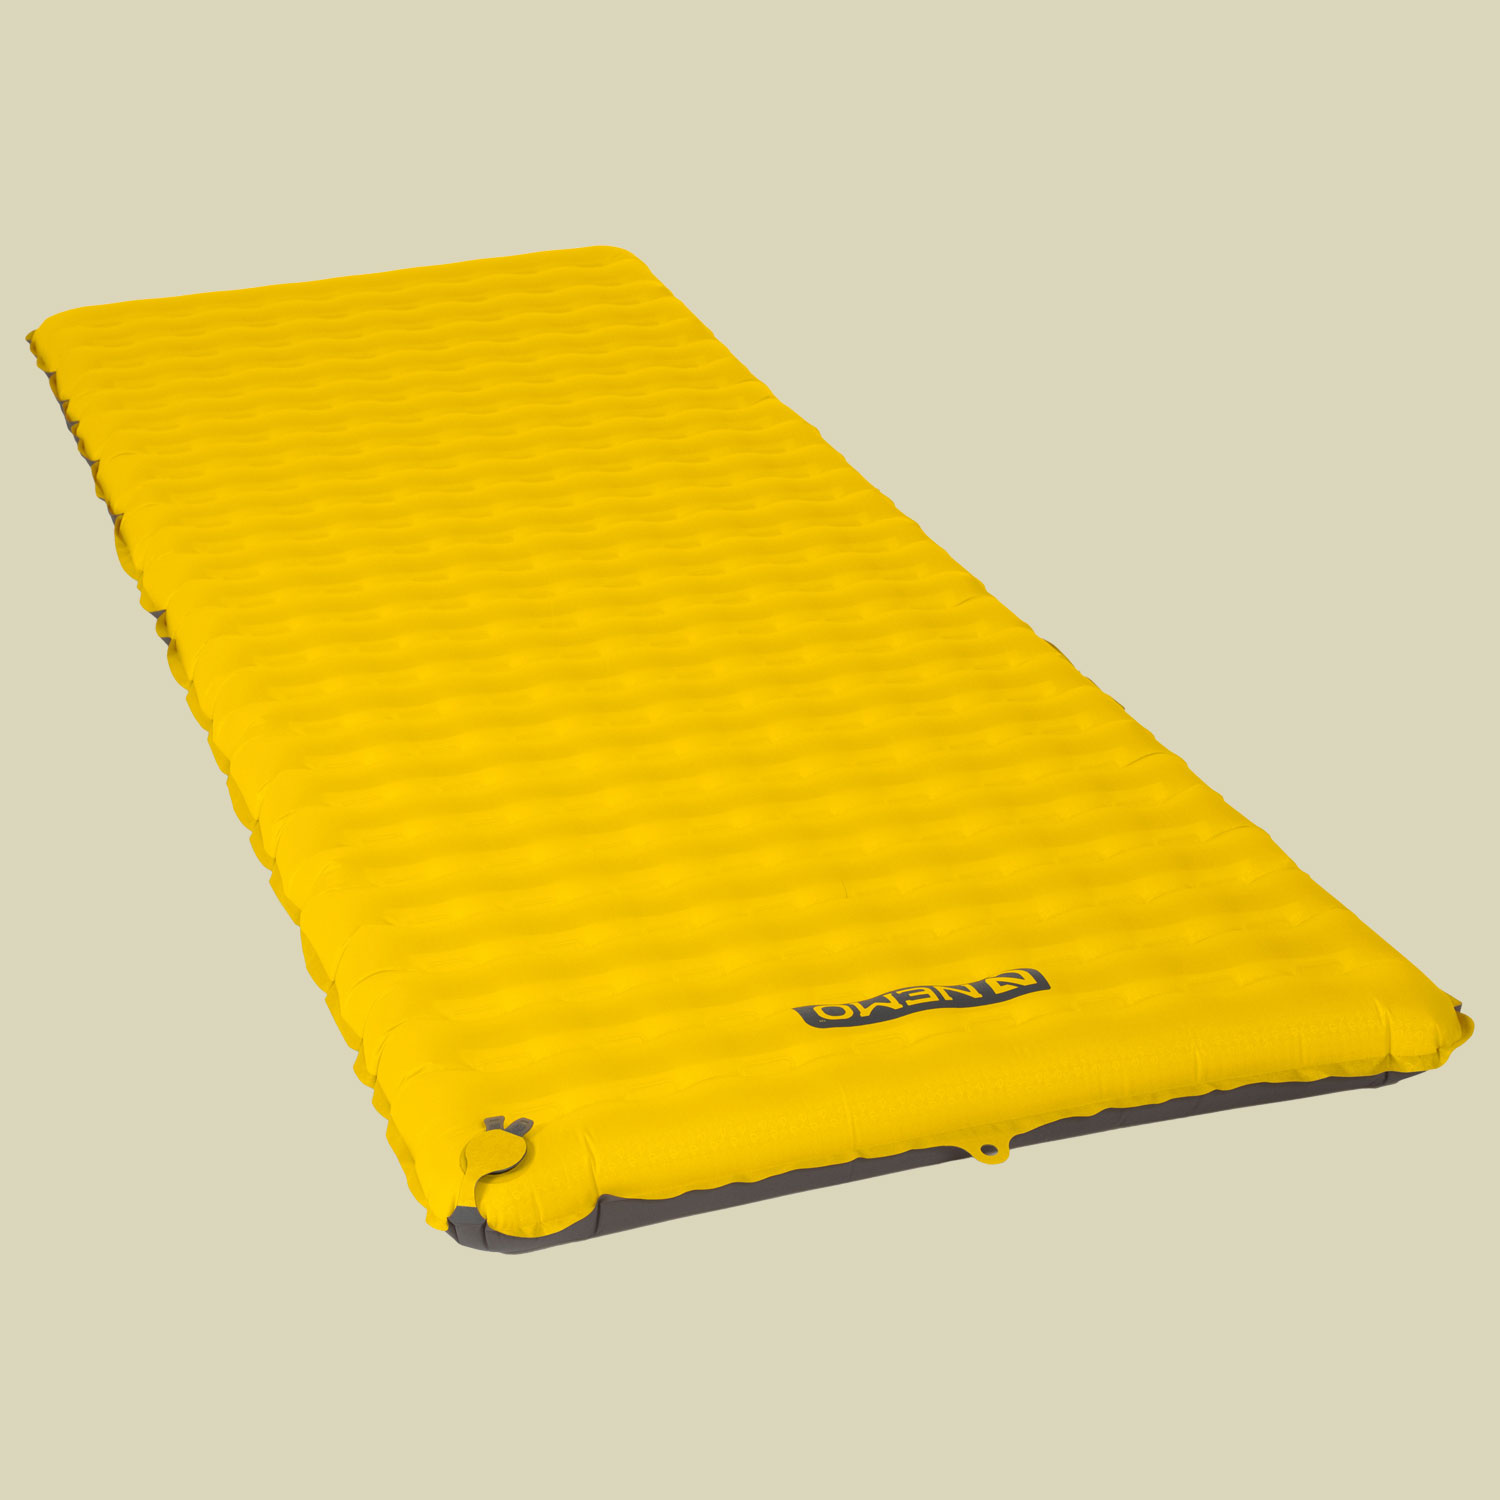 Tensor Sleeping Pad Liegefläche 183 x 64 cm REGULAR WIDE Farbe goldfinch